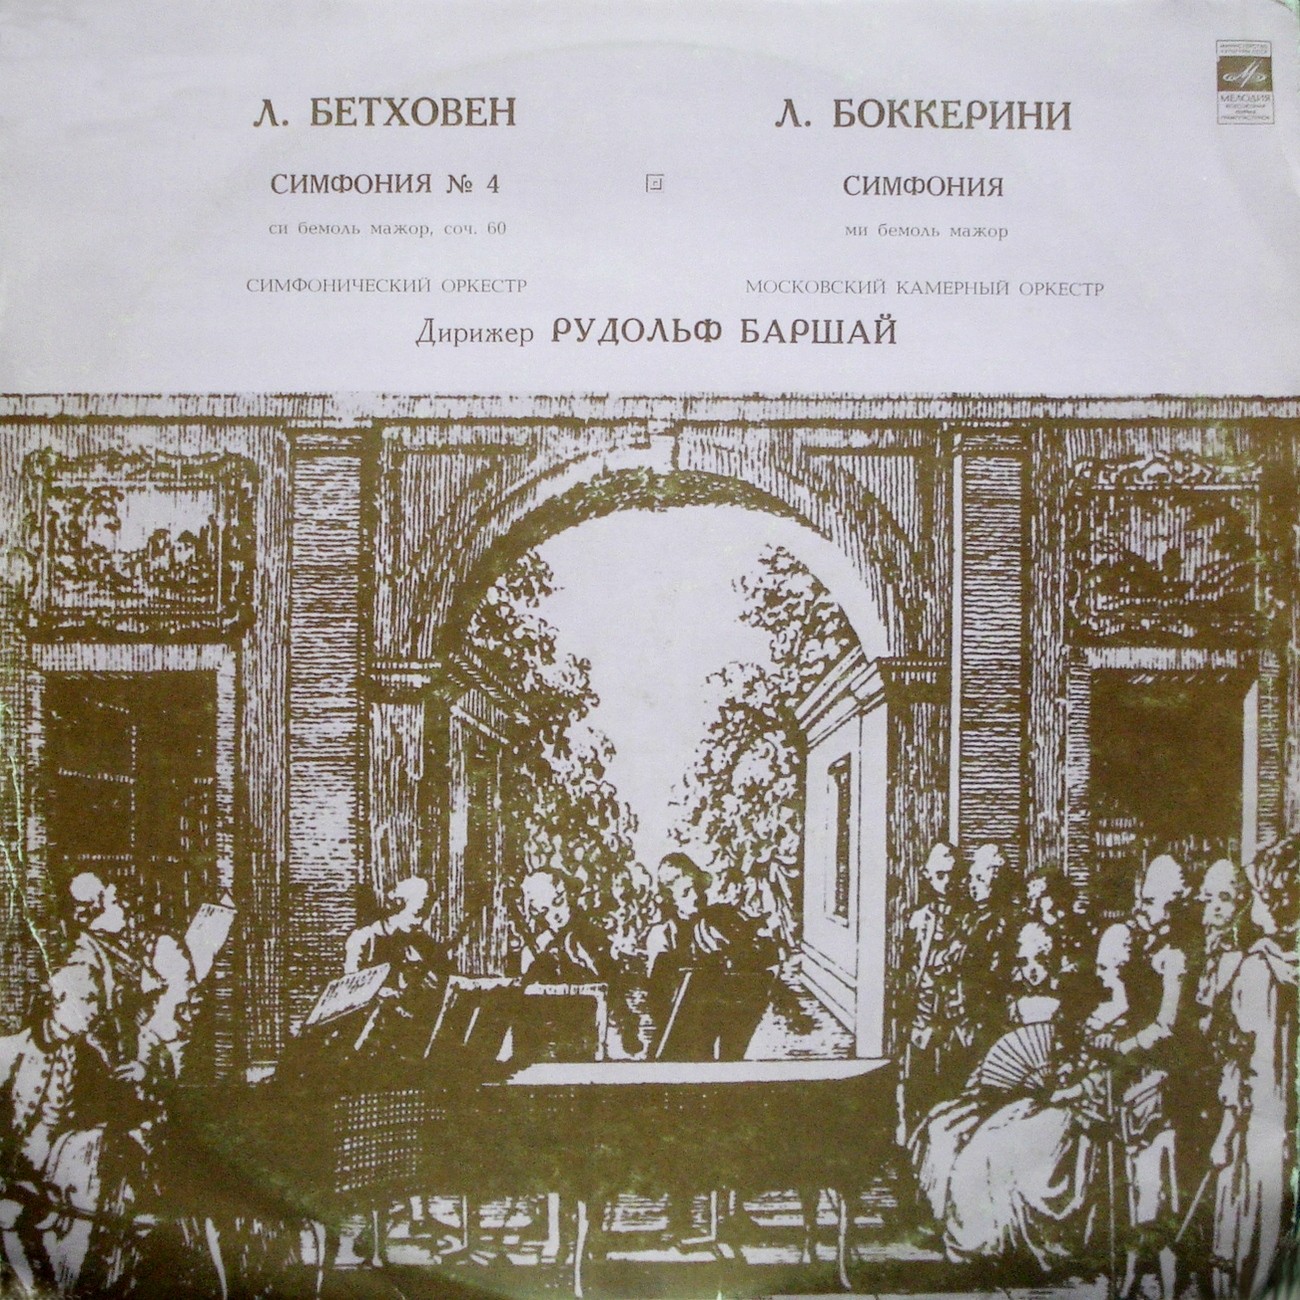 Л. БЕТХОВЕН (177-–1827): Симфония №4, Л. БОККЕРИНИ (1743–1805): Симфония (Р. Баршай)